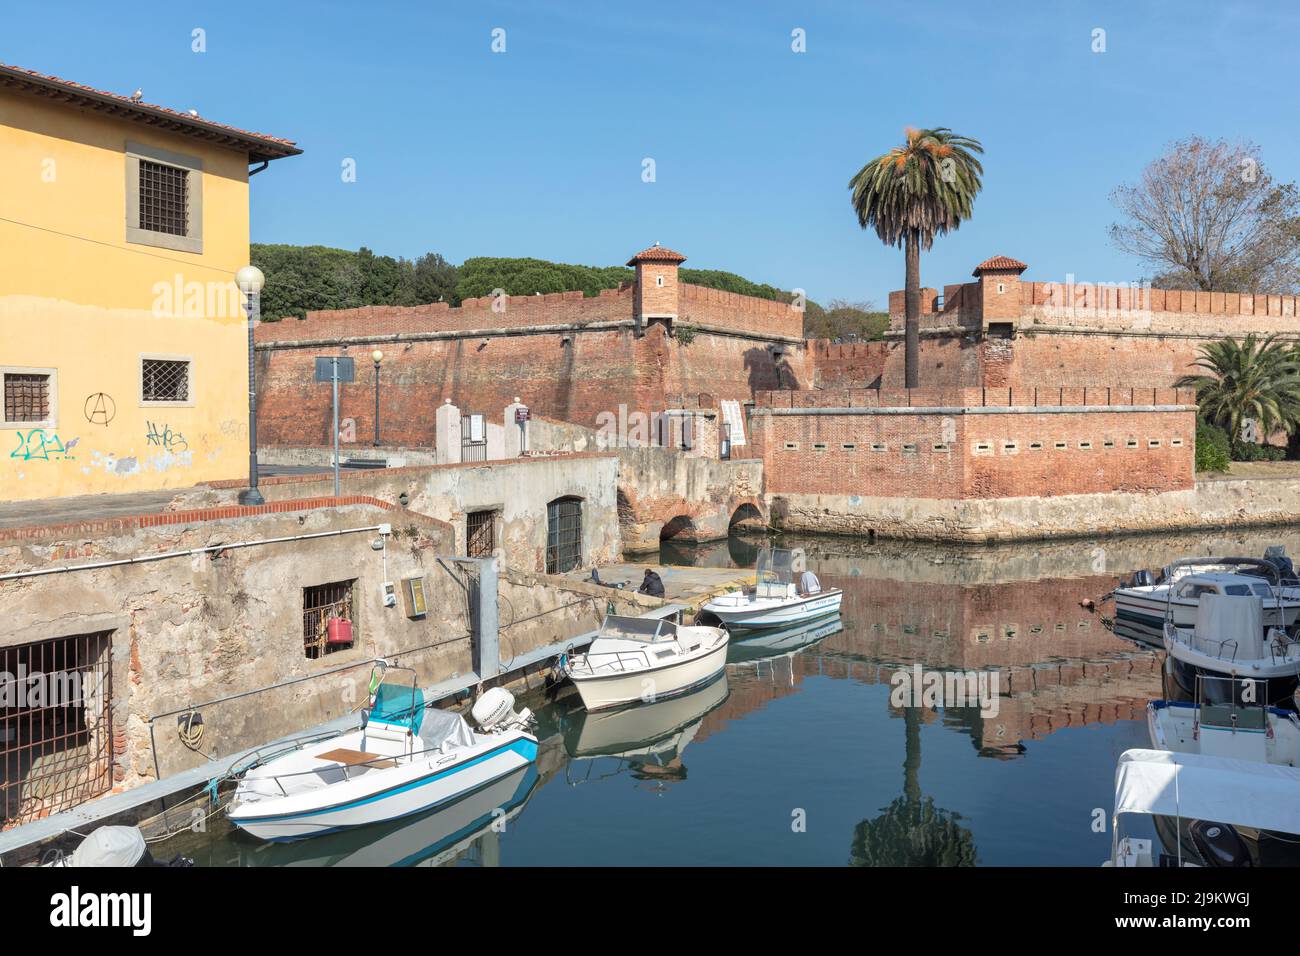 Fortezza Nuova, Festung im Jahr 1604 abgeschlossen, in Scali della Fortezza Nuova, umgeben von Booten in historischen Kanal, Livorno, Toskana, Italien Stockfoto